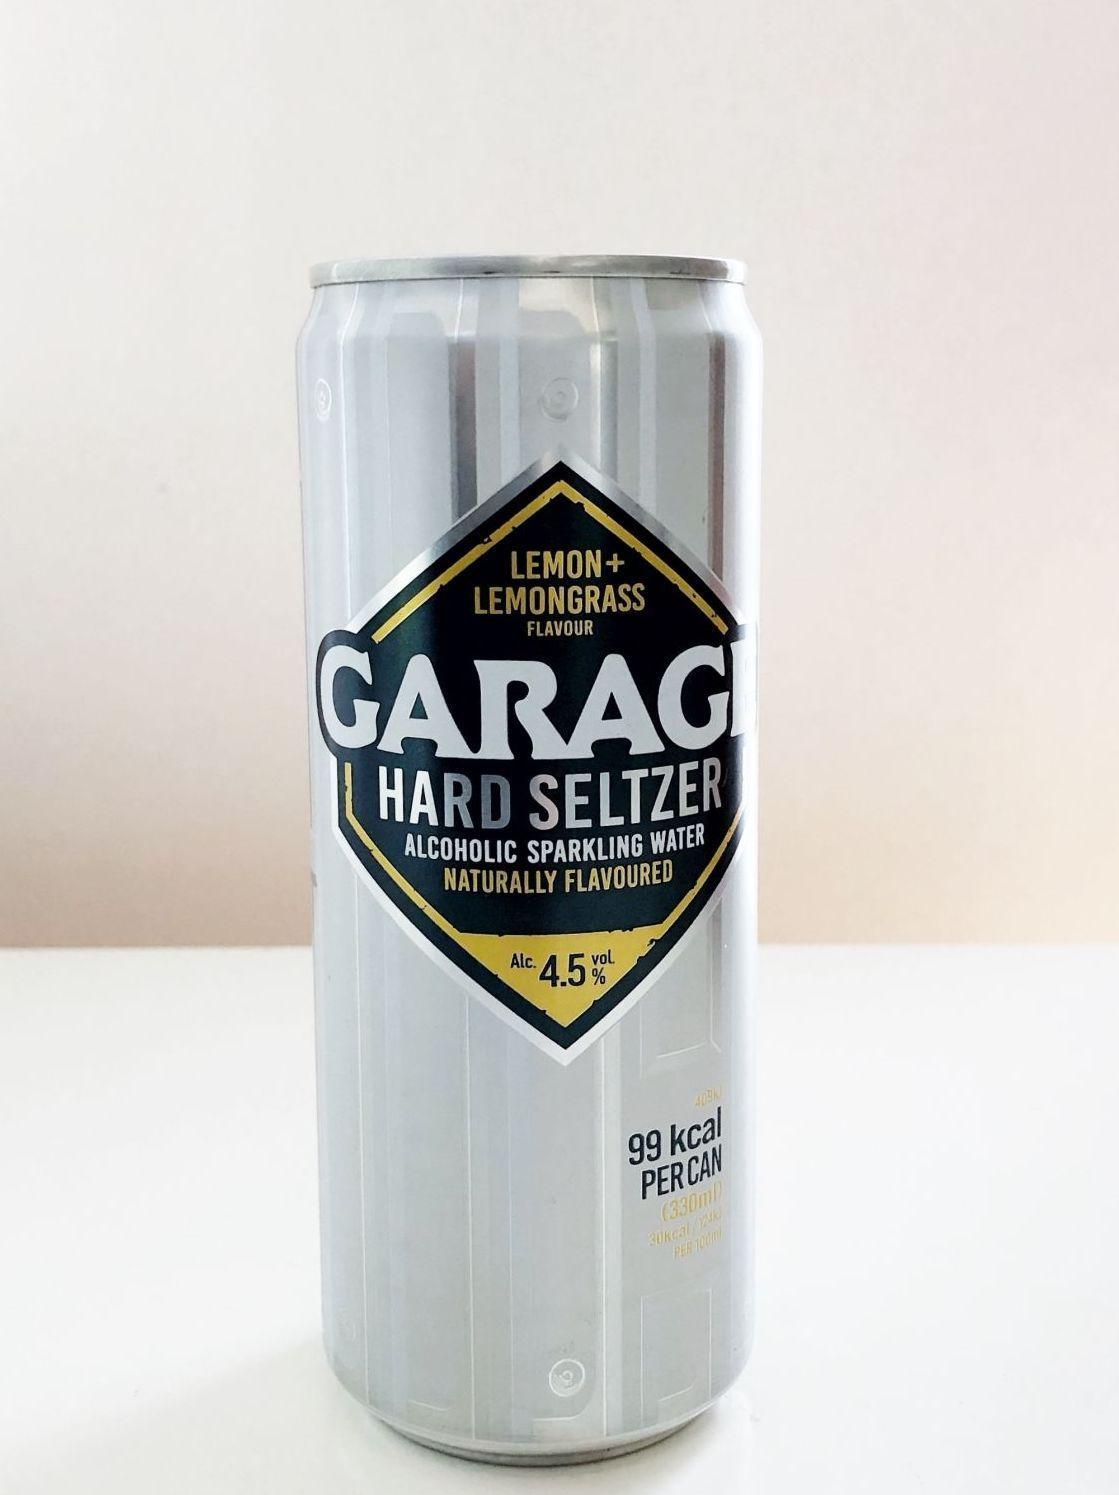 HARD SELTZER: Garage, lemon + lemongrass.
Foto: Tjodunn Dyrnes